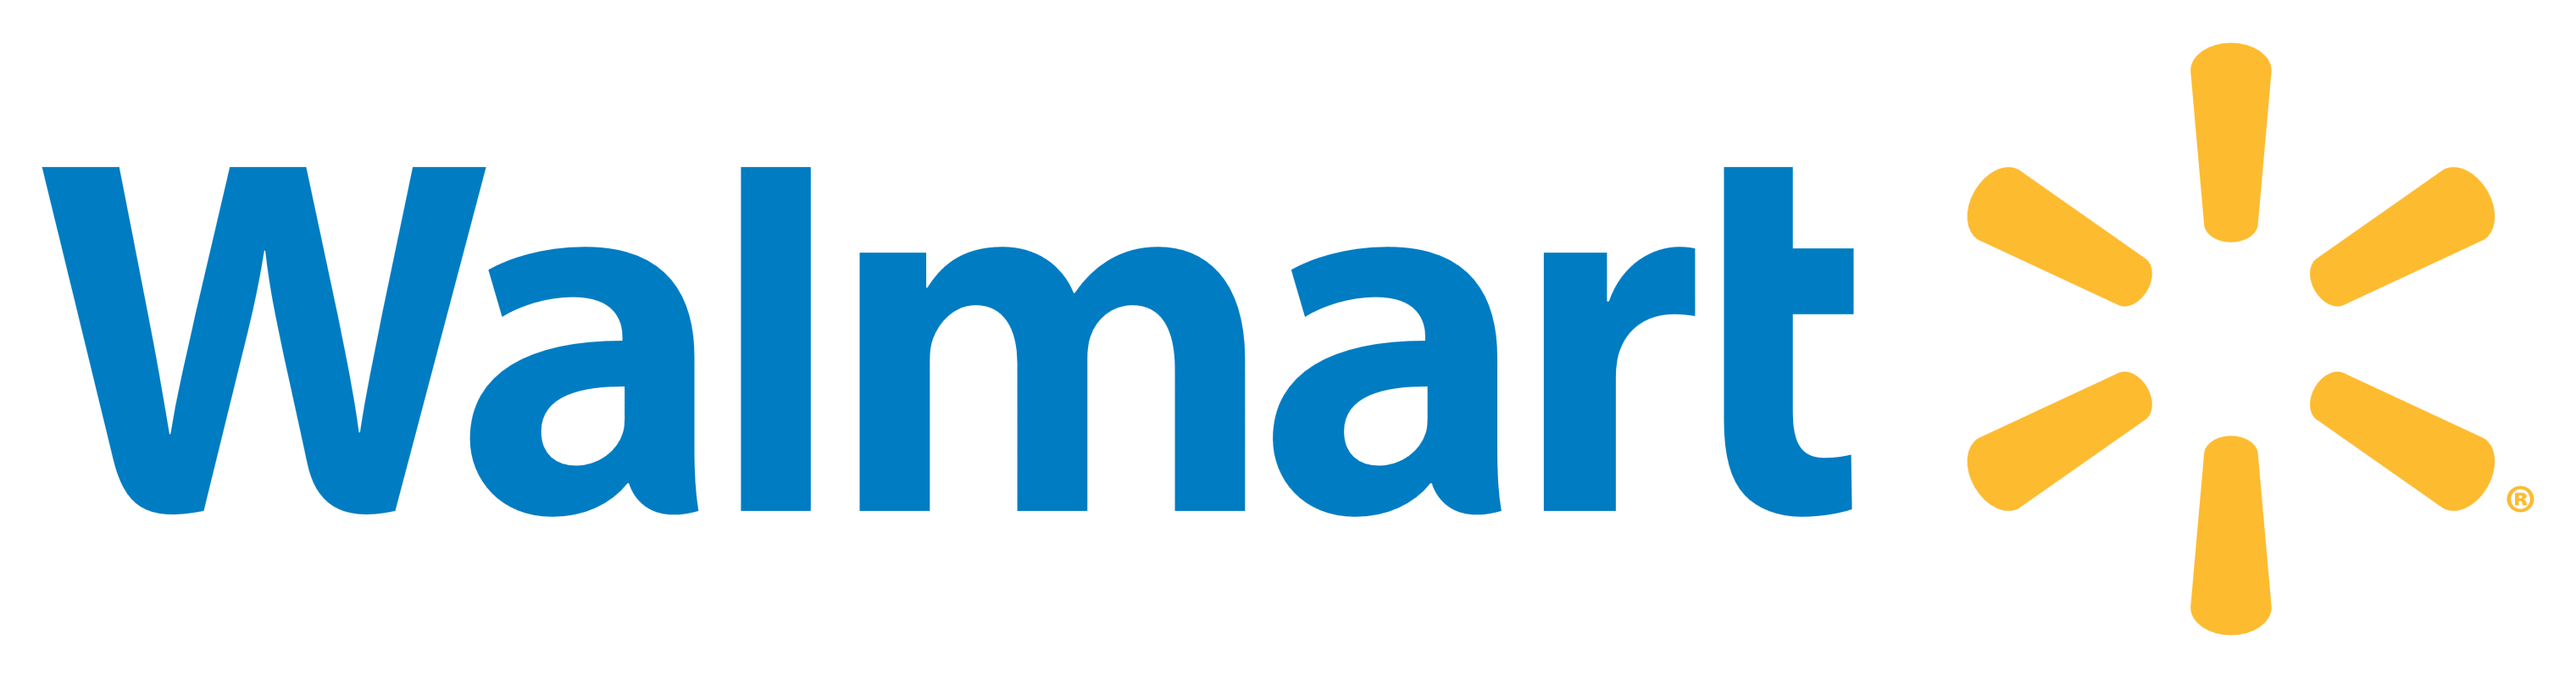 Walmart – Logos Download